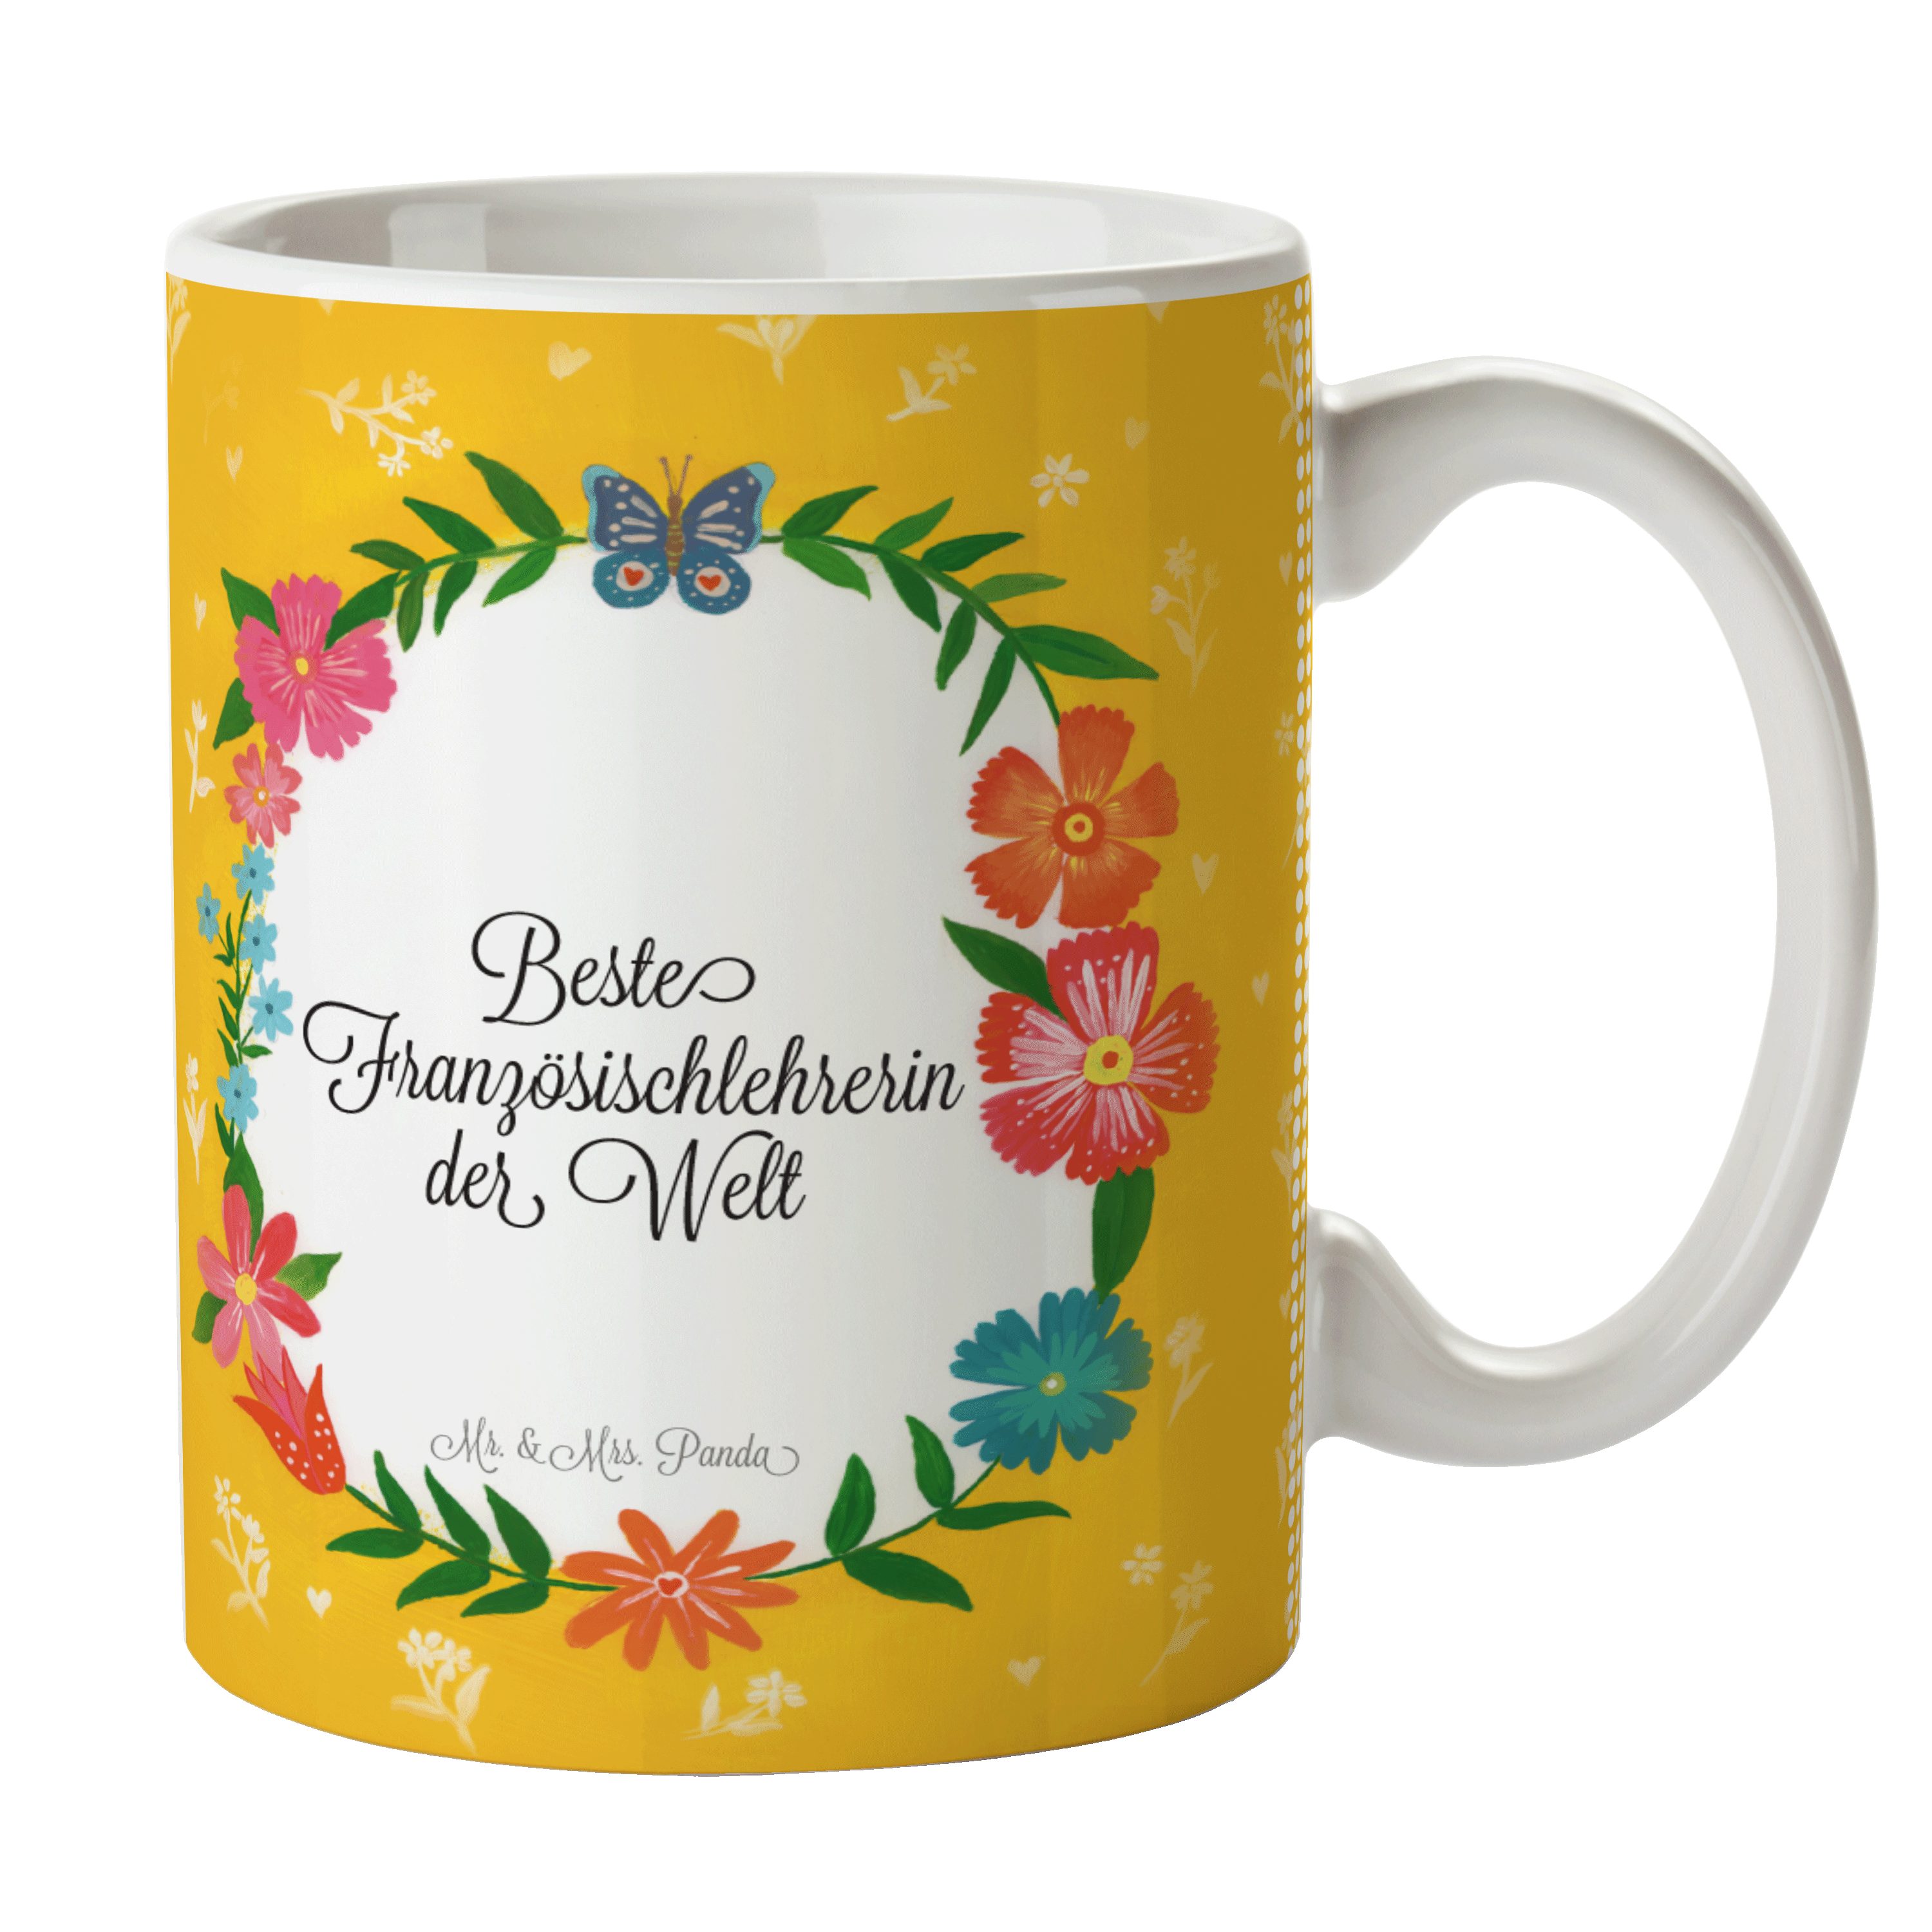 Mr. Abschluss, Geschenk, Keramik Tasse Kaffeebecher, Panda & Gratulation, Französischlehrerin Mrs. -